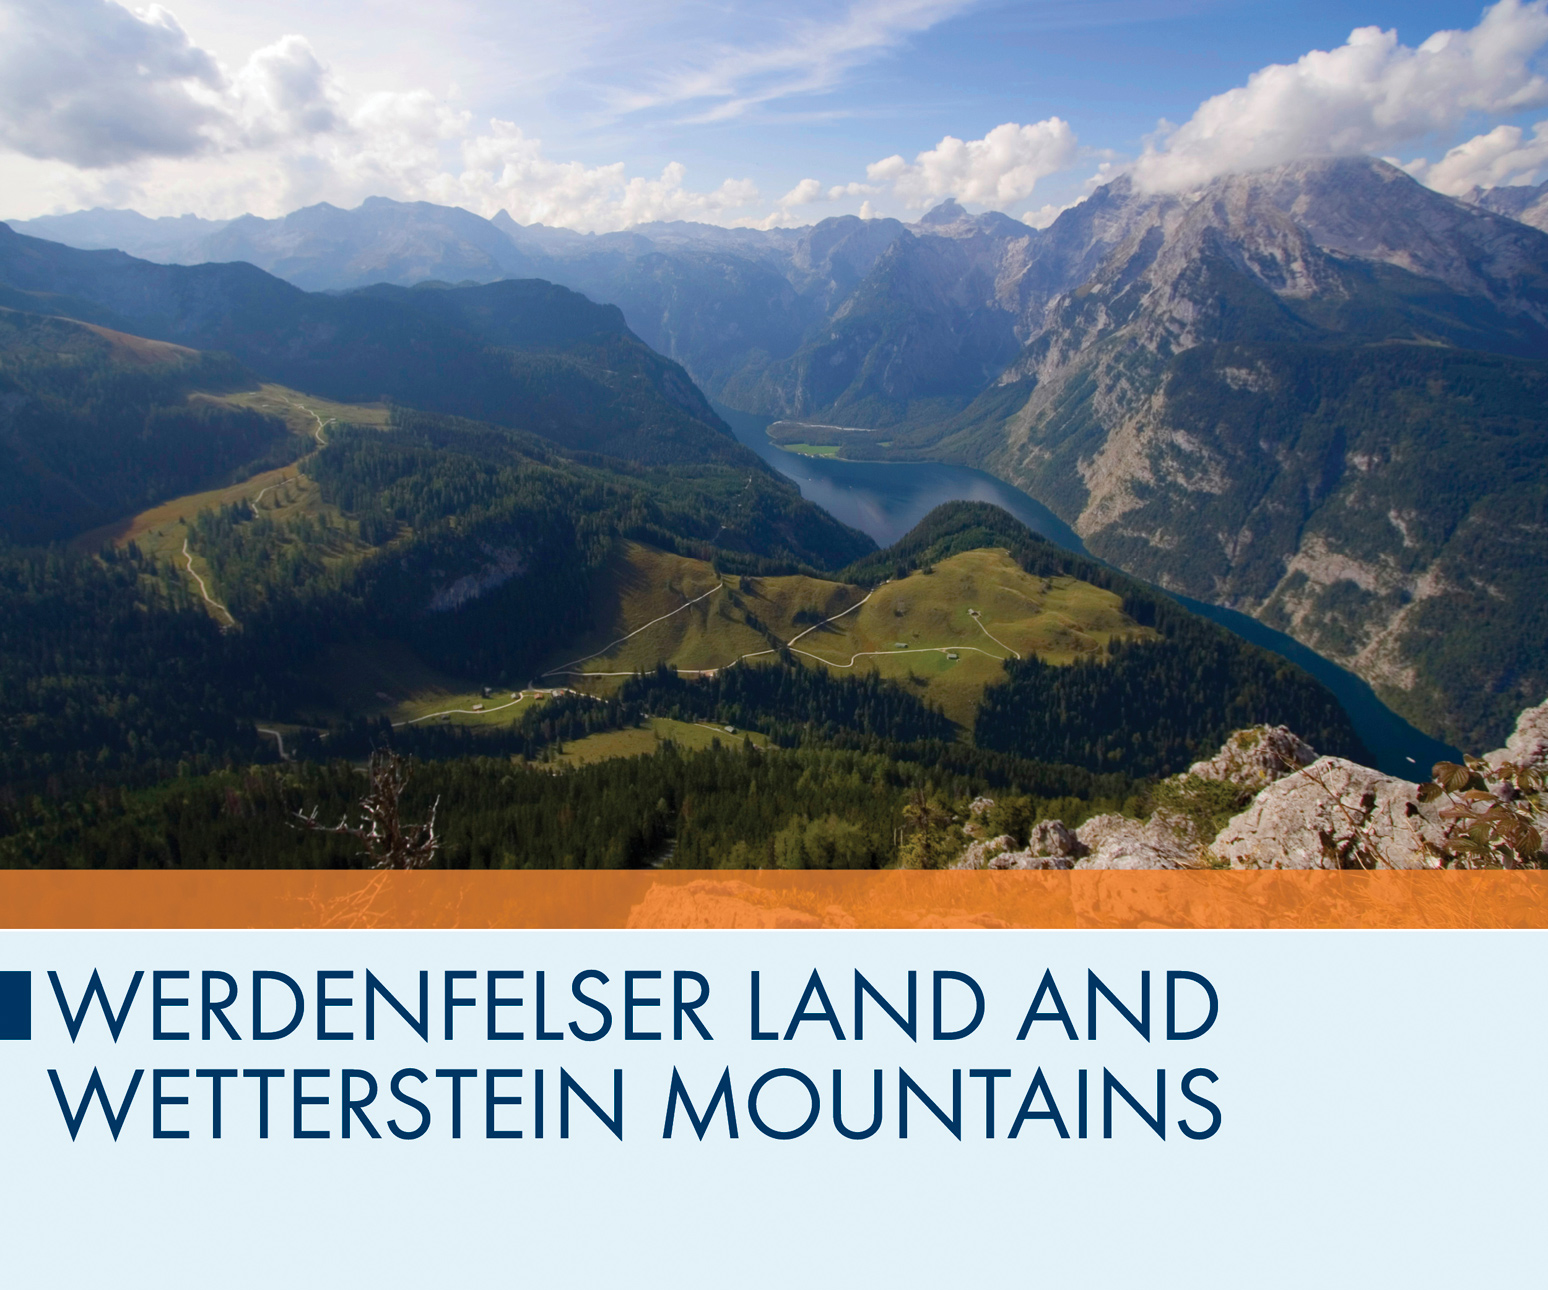 Werdenfelser Land and Wetterstein Mountains